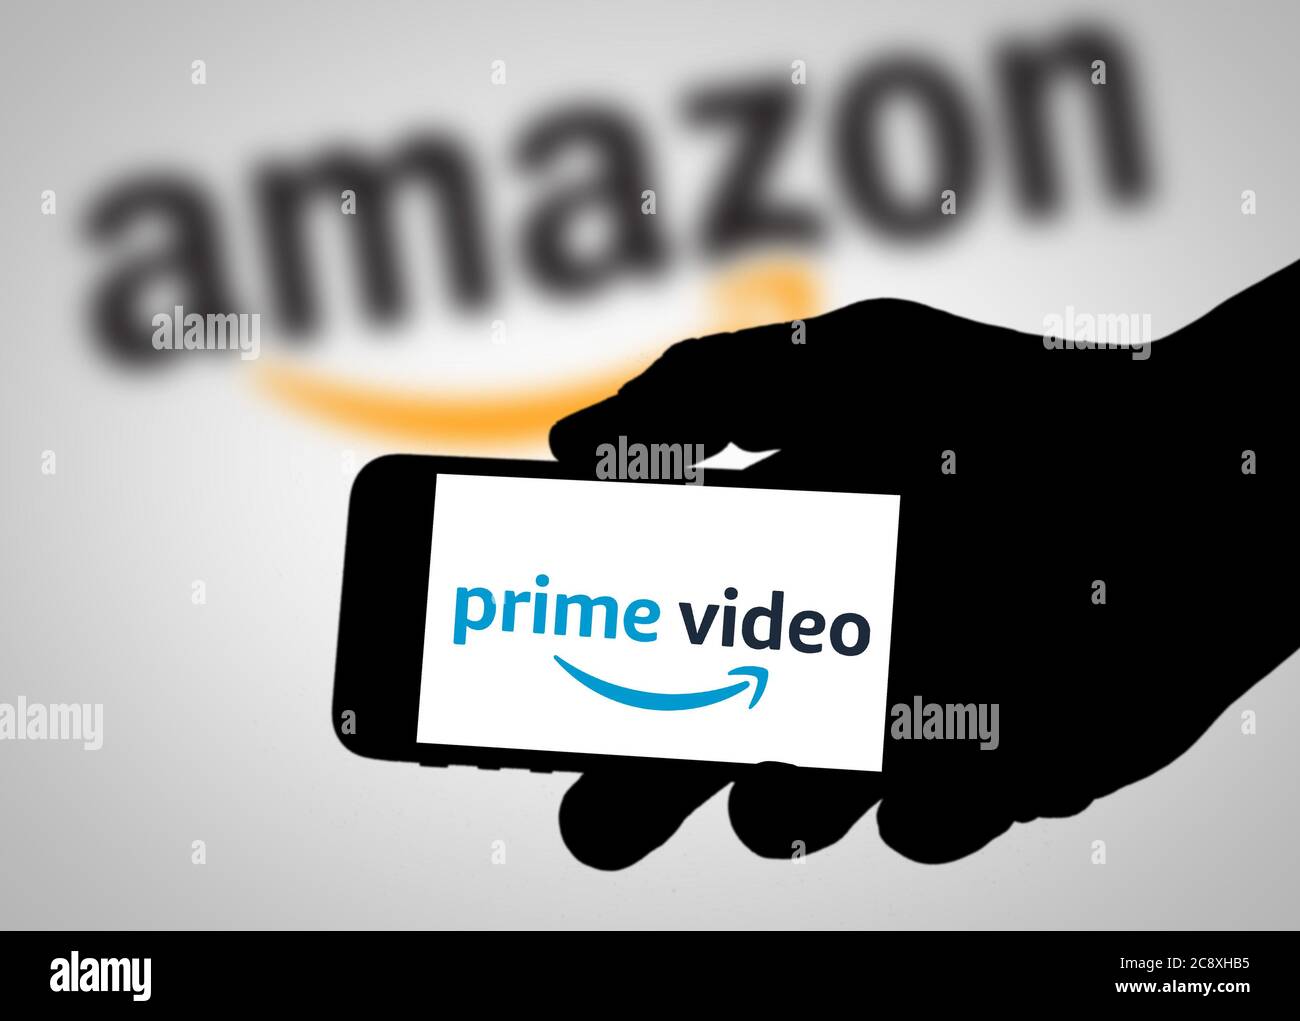 Amazon Prime Video logo Stock Photo